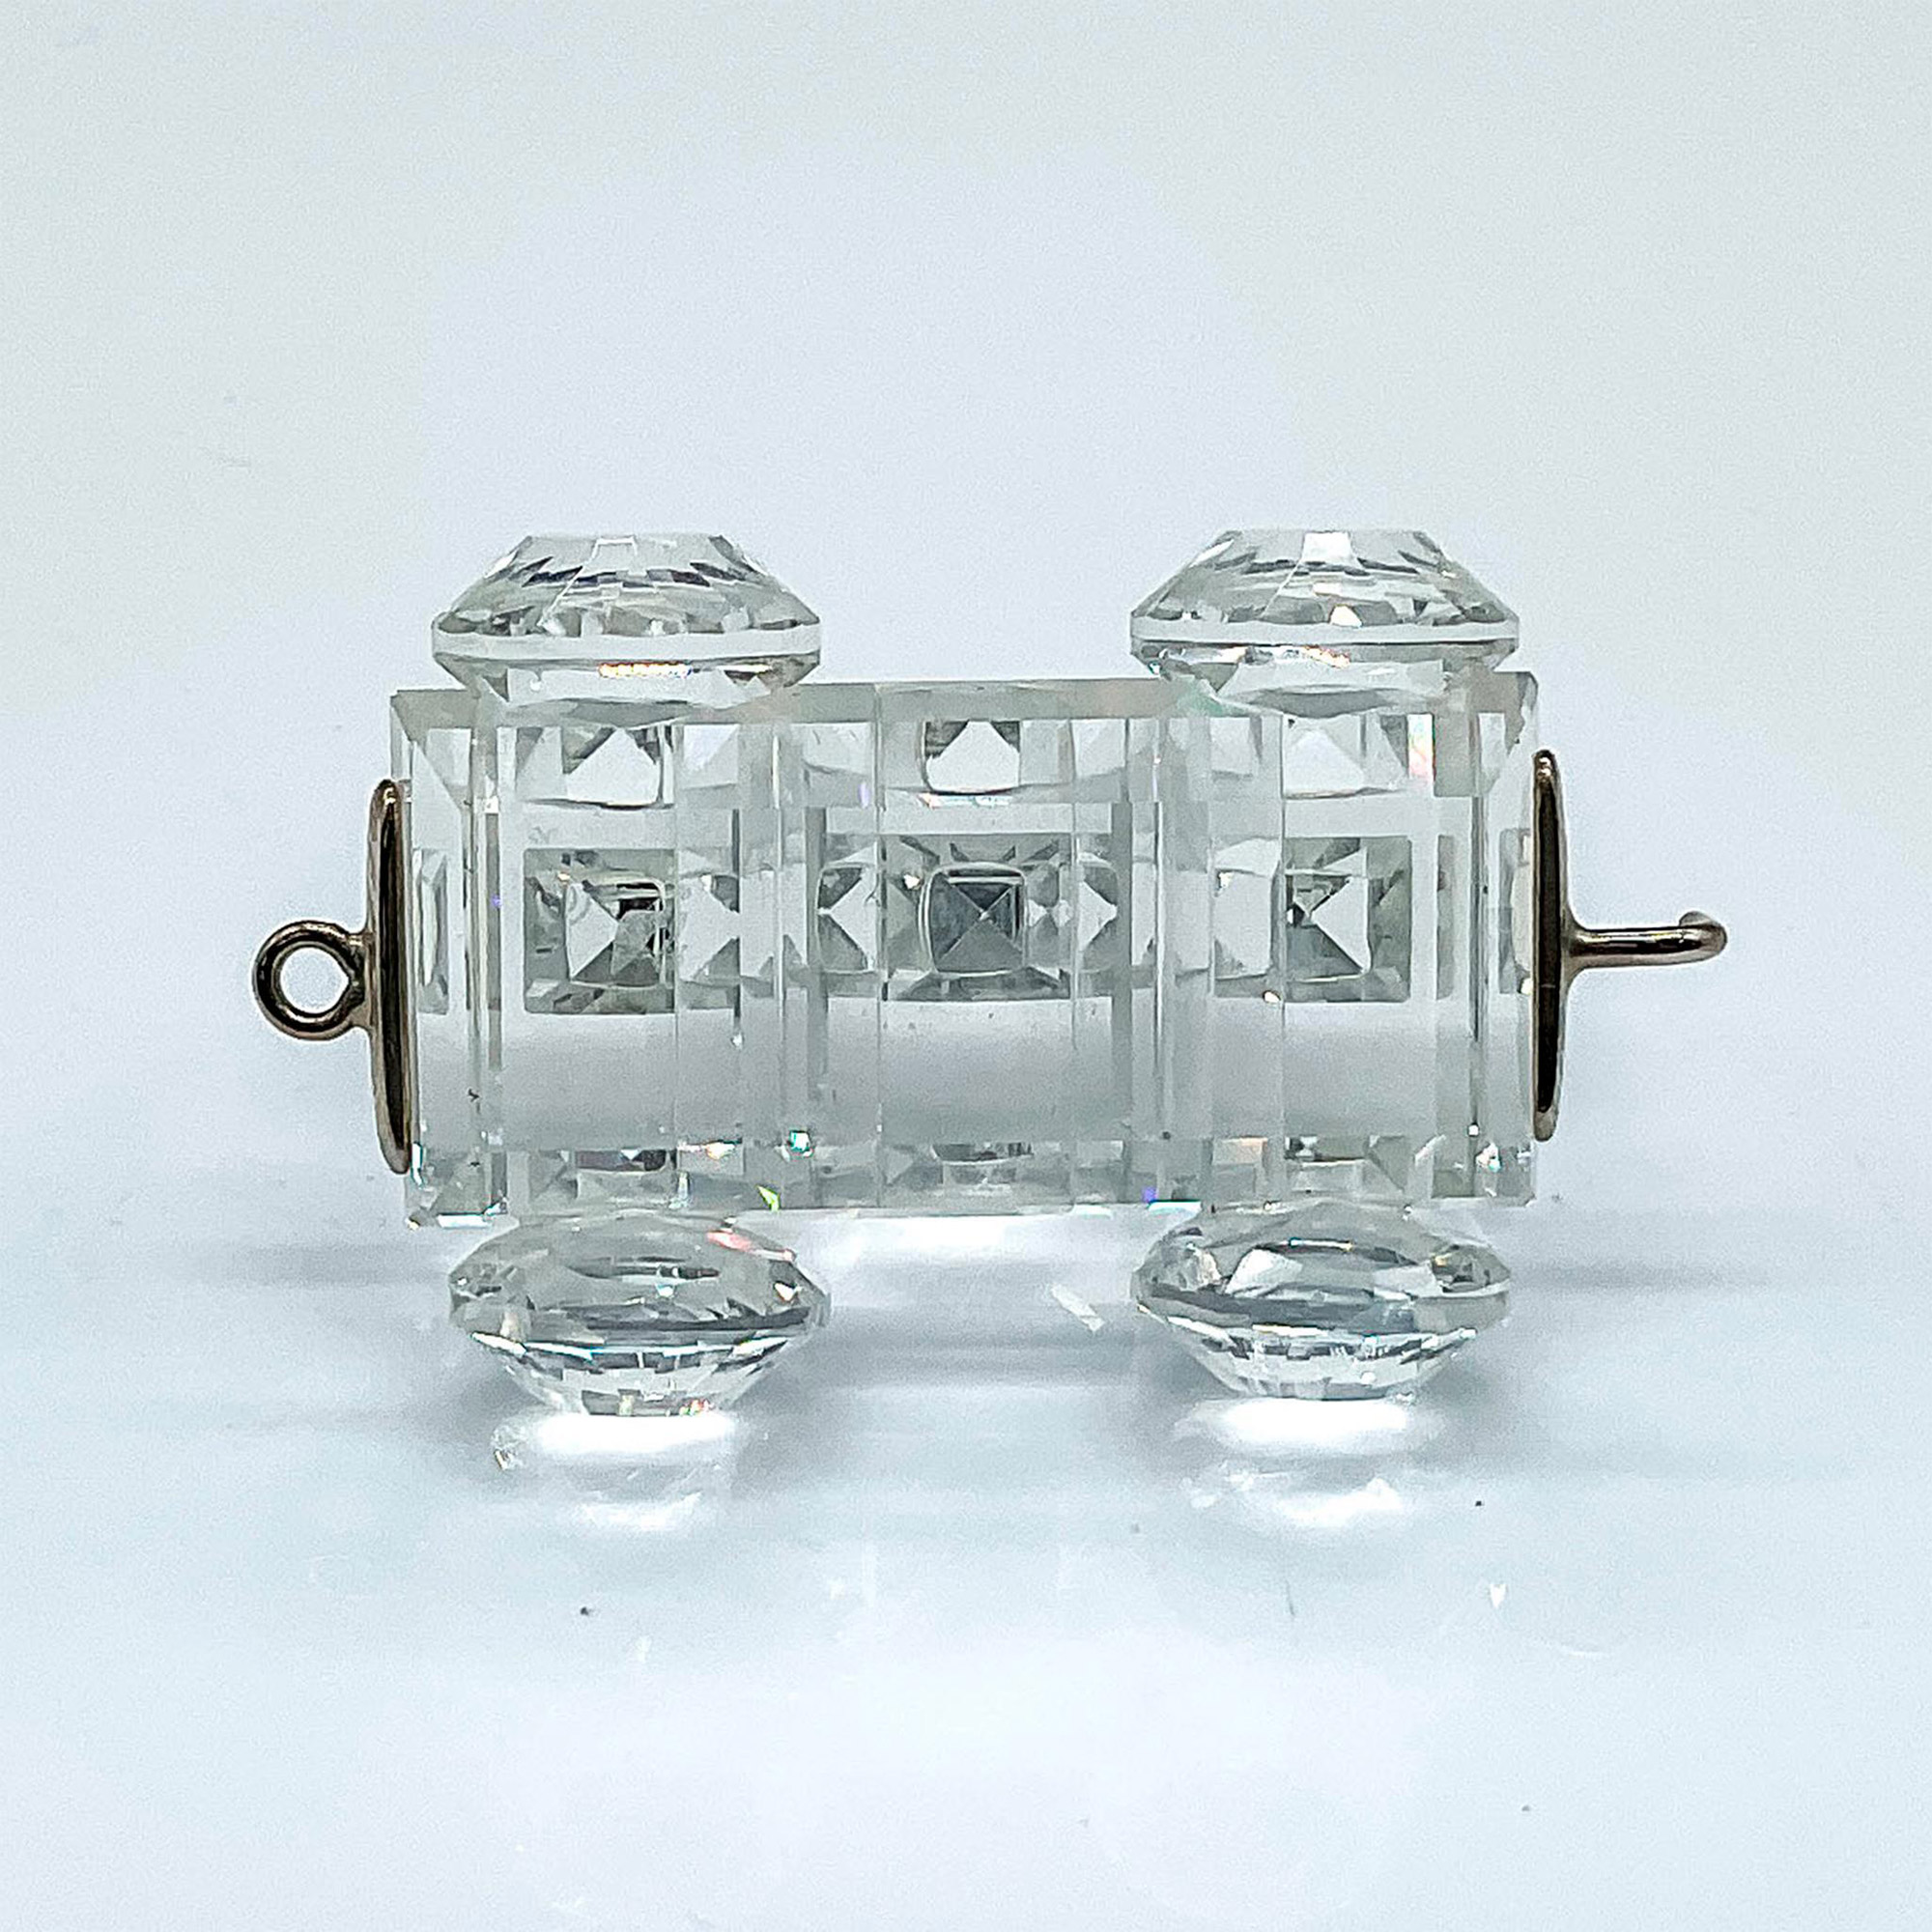 Swarovski Silver Crystal Figurine, Petrol Wagon Train Car - Image 3 of 4